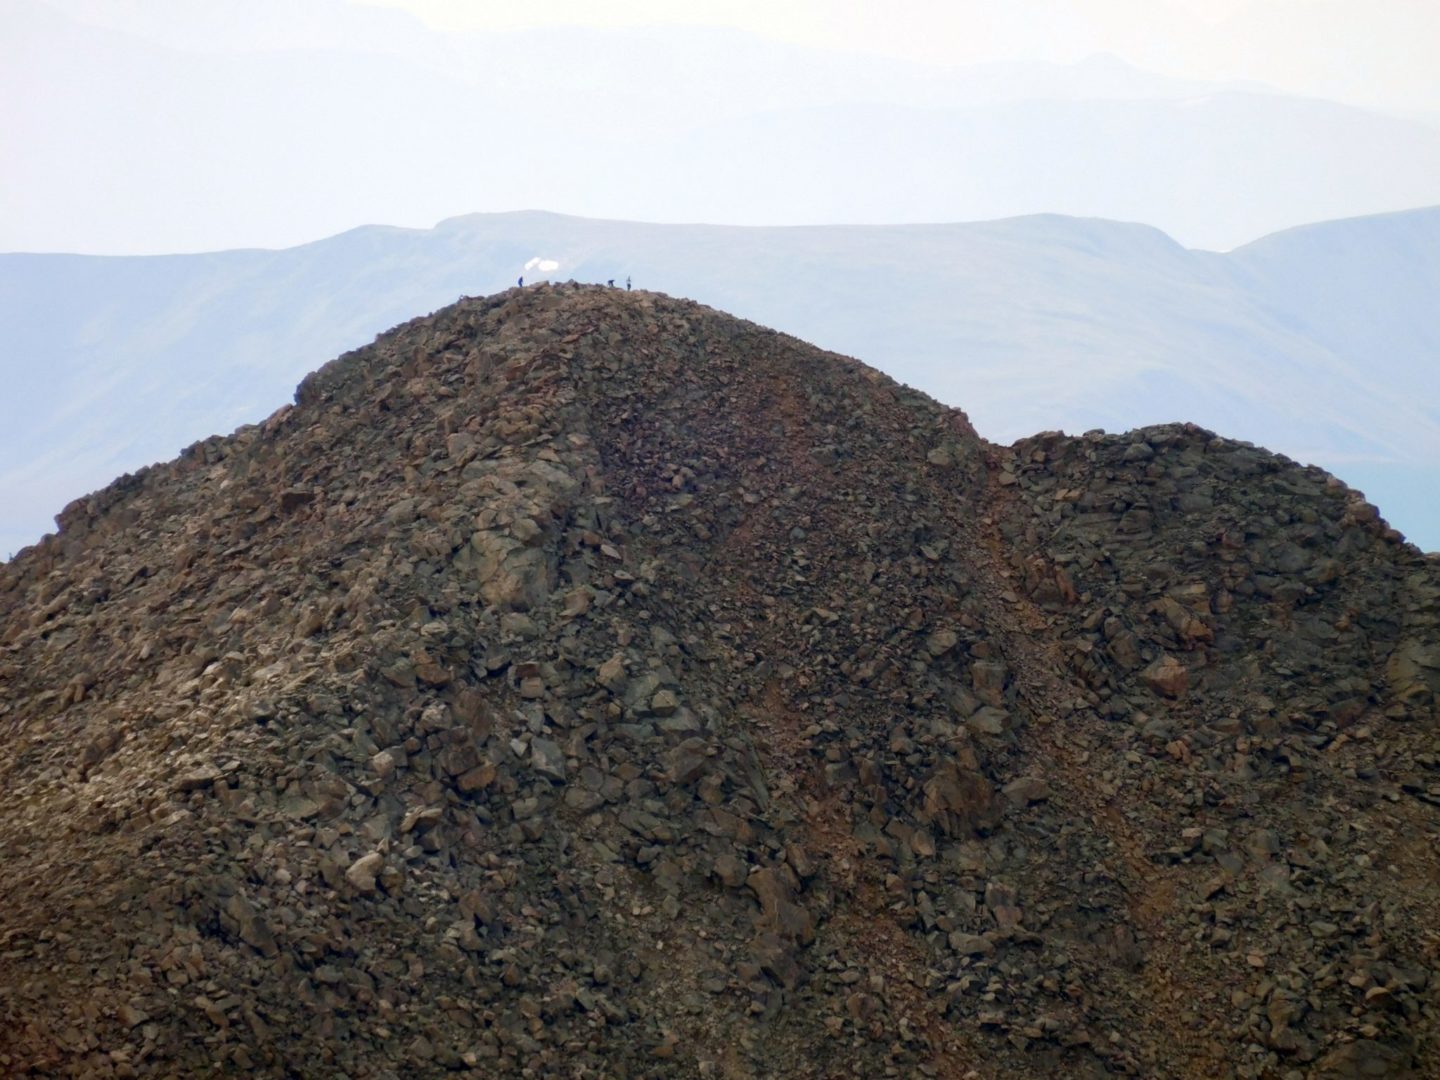 View of Mt Bierstadt